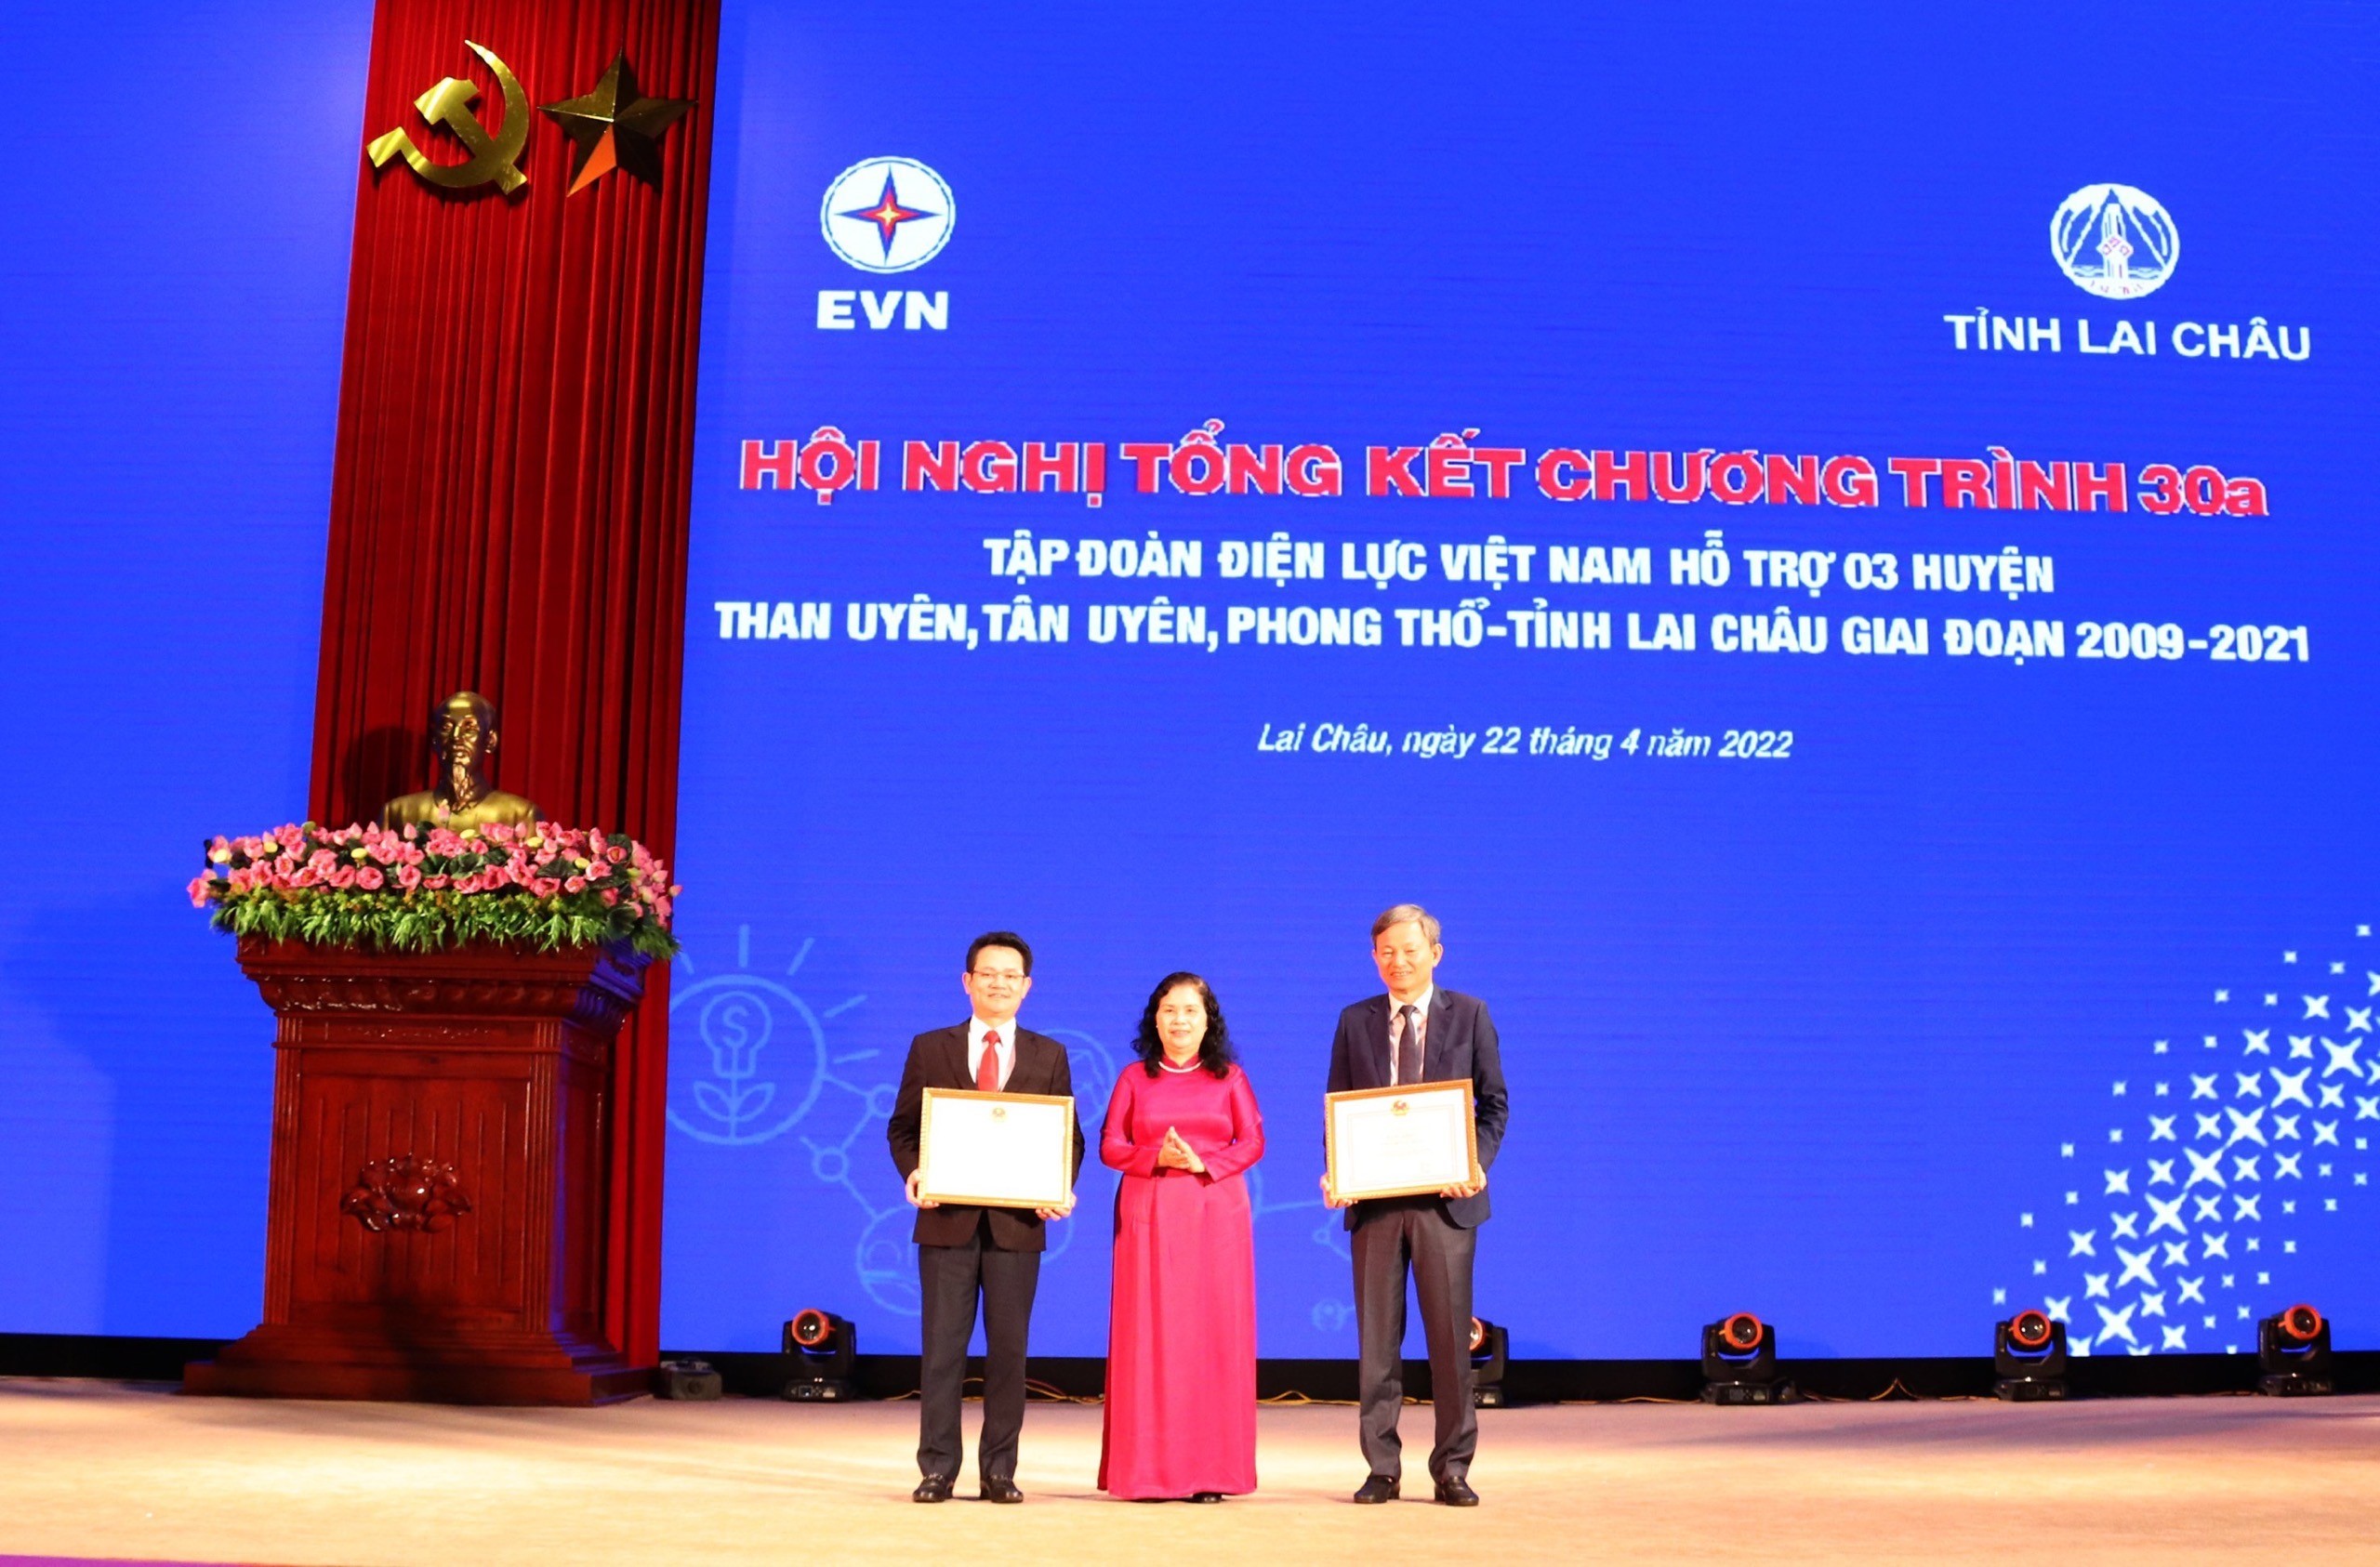 Tổng kết Chương trình 30a, EVN hỗ trợ 3 huyện nghèo tại Lai Châu